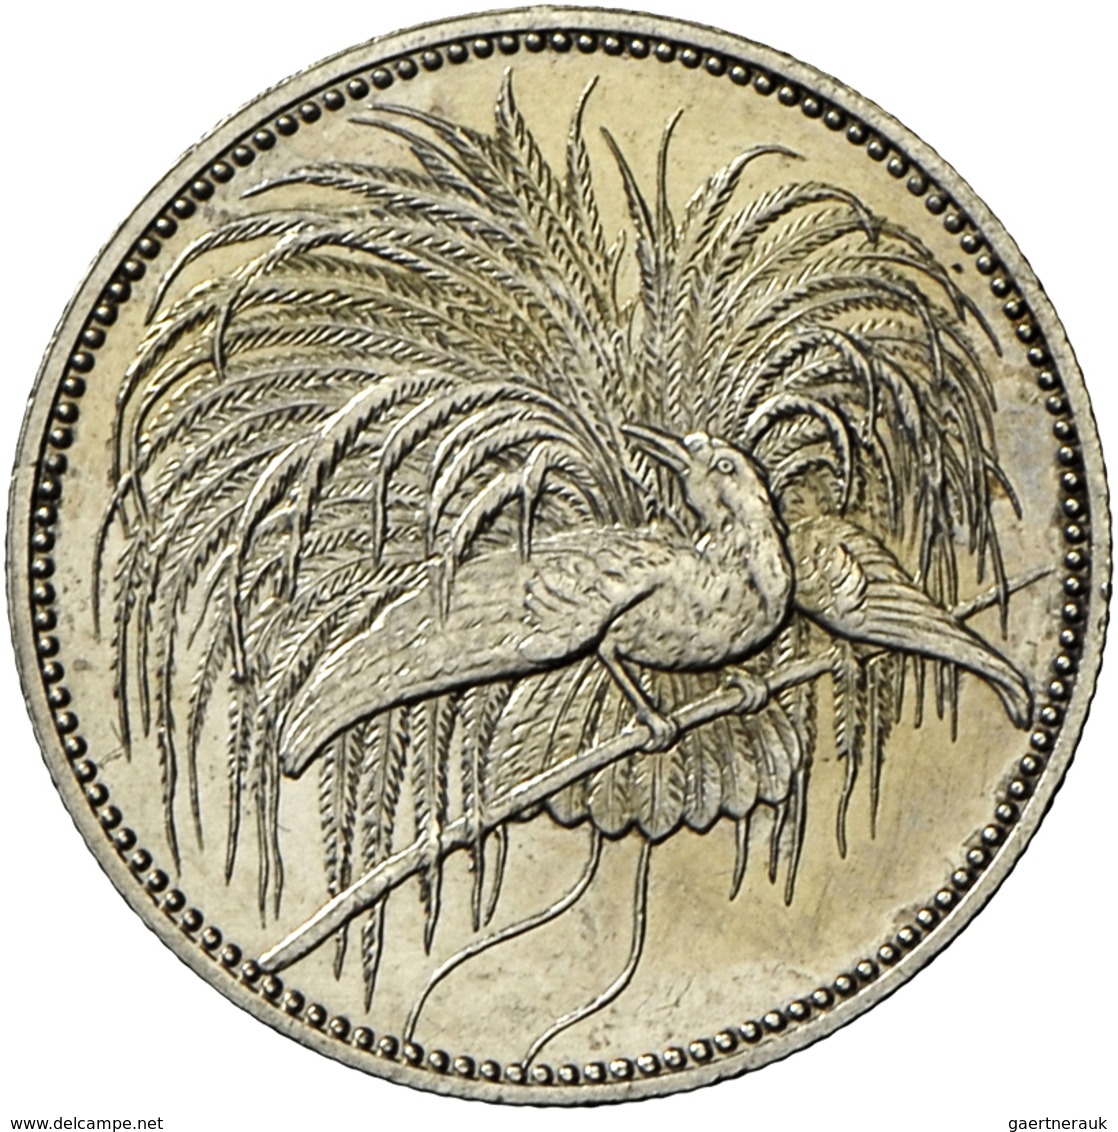 Deutsch-Neuguinea: 1 Mark 1894 A, Paradiesvogel, Jaeger 705, AKS 2018, No. 959, Vorzüglich/Stempelgl - German New Guinea